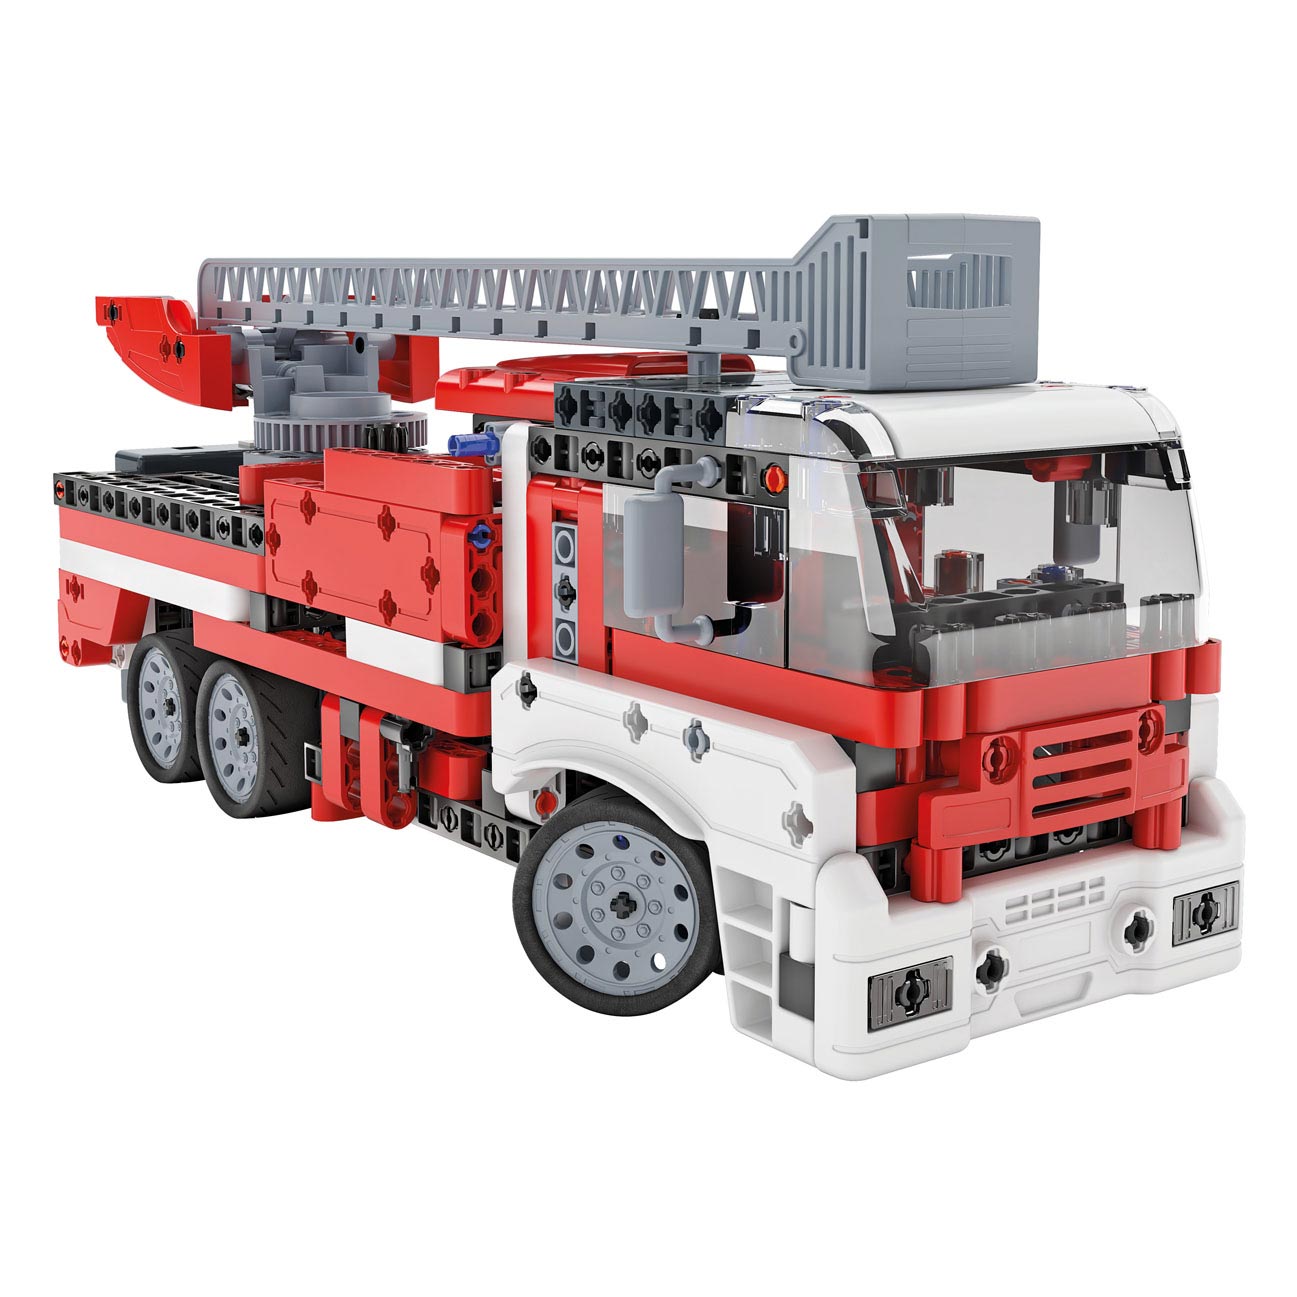 Clementoni Wetenschap & Spel Mechanica  - Brandweerwagen